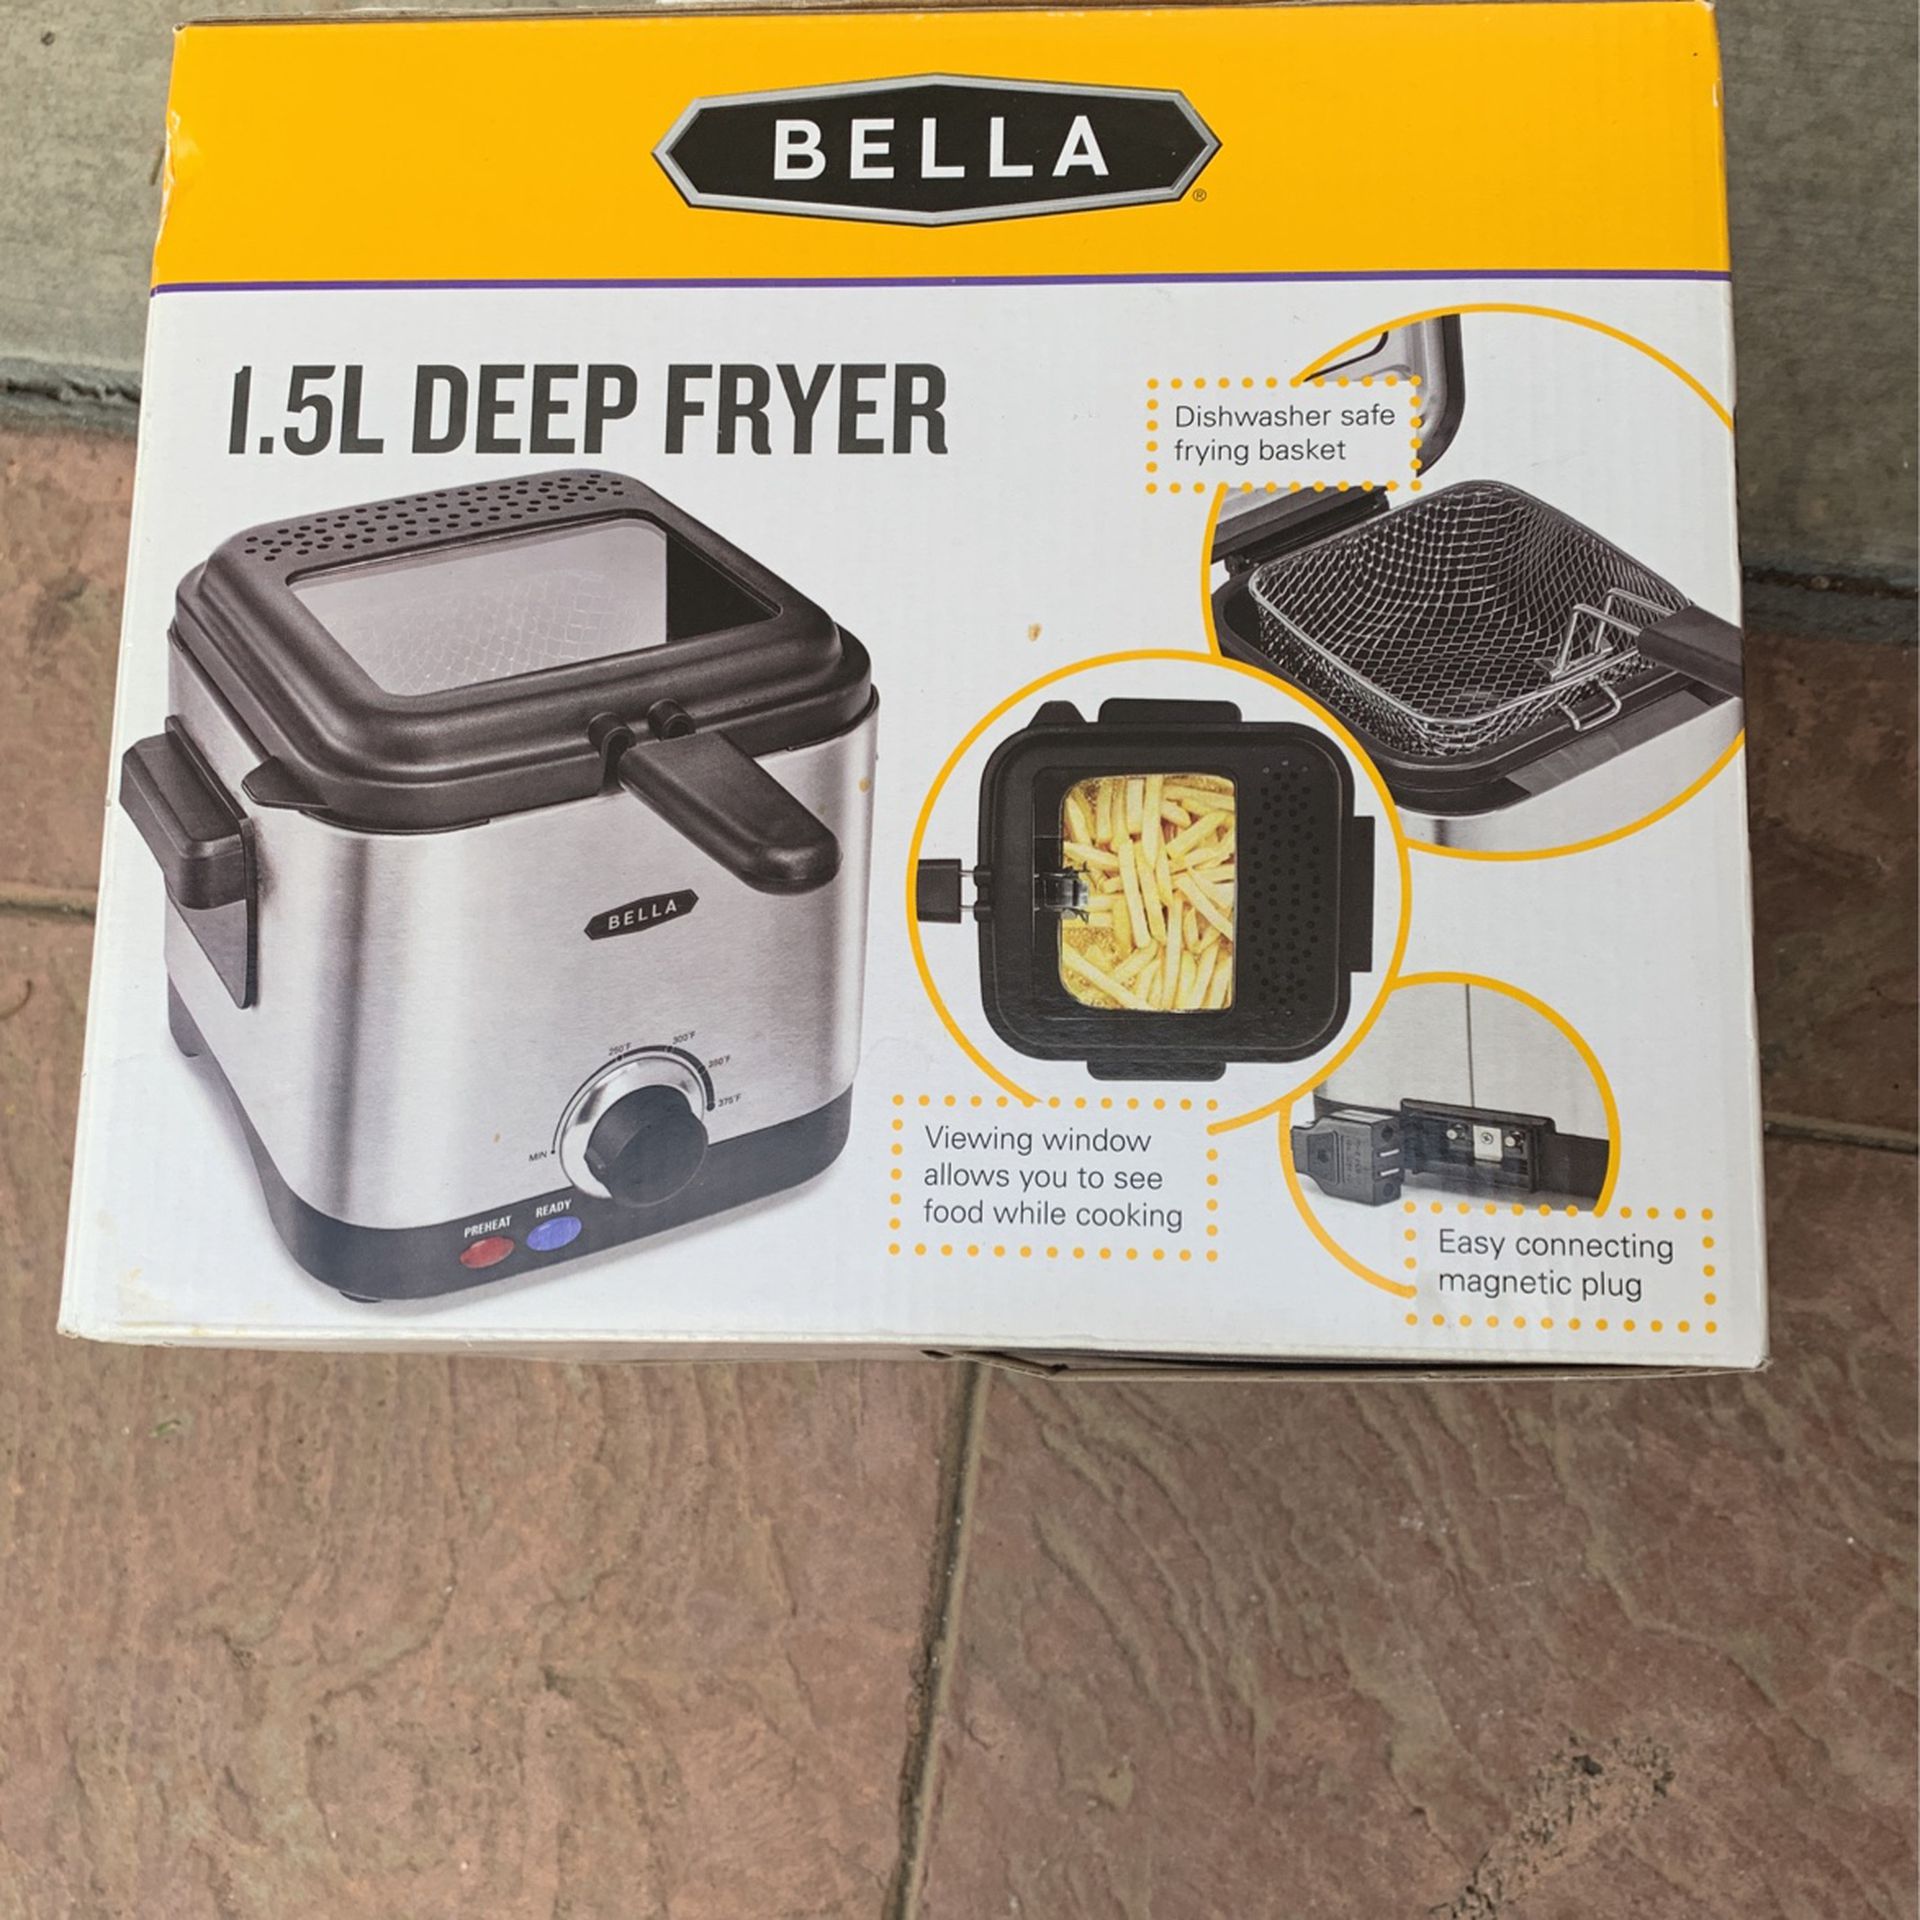 Bella 1.5L Deep Fryer